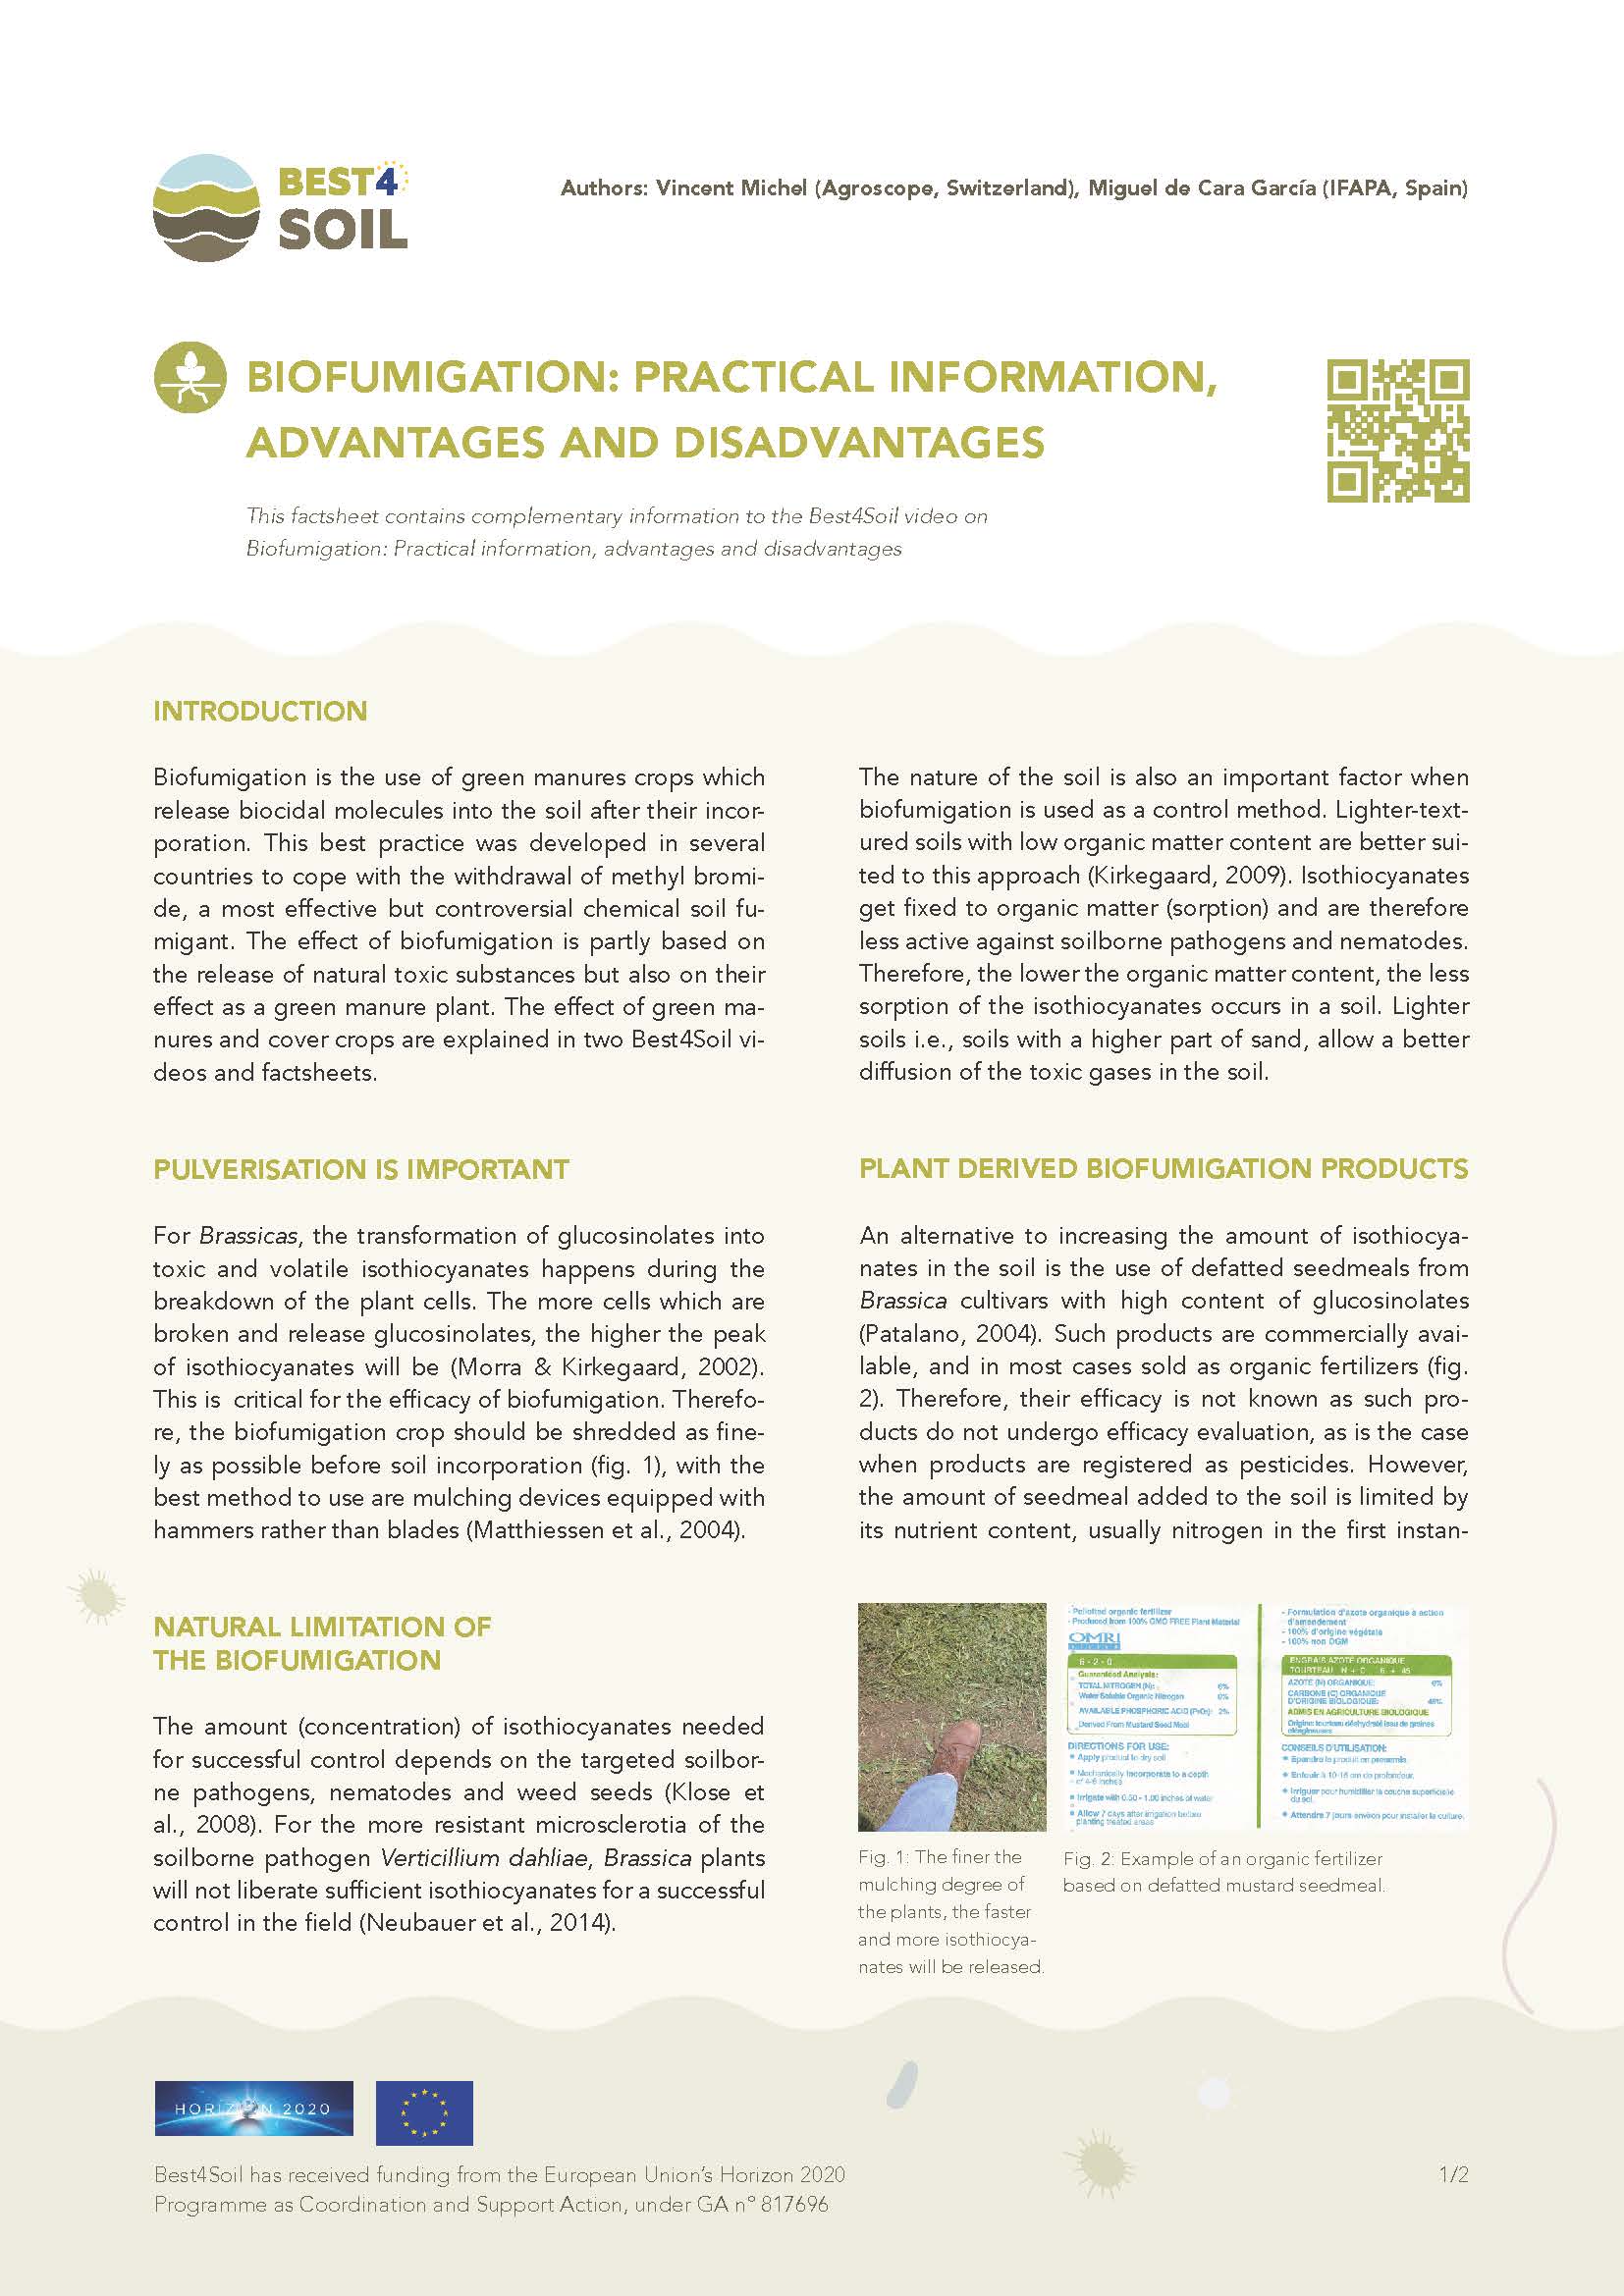 Biofümigáció: Gyakorlati információk, előnyei és hátrányai (Best4Soil adatlap)